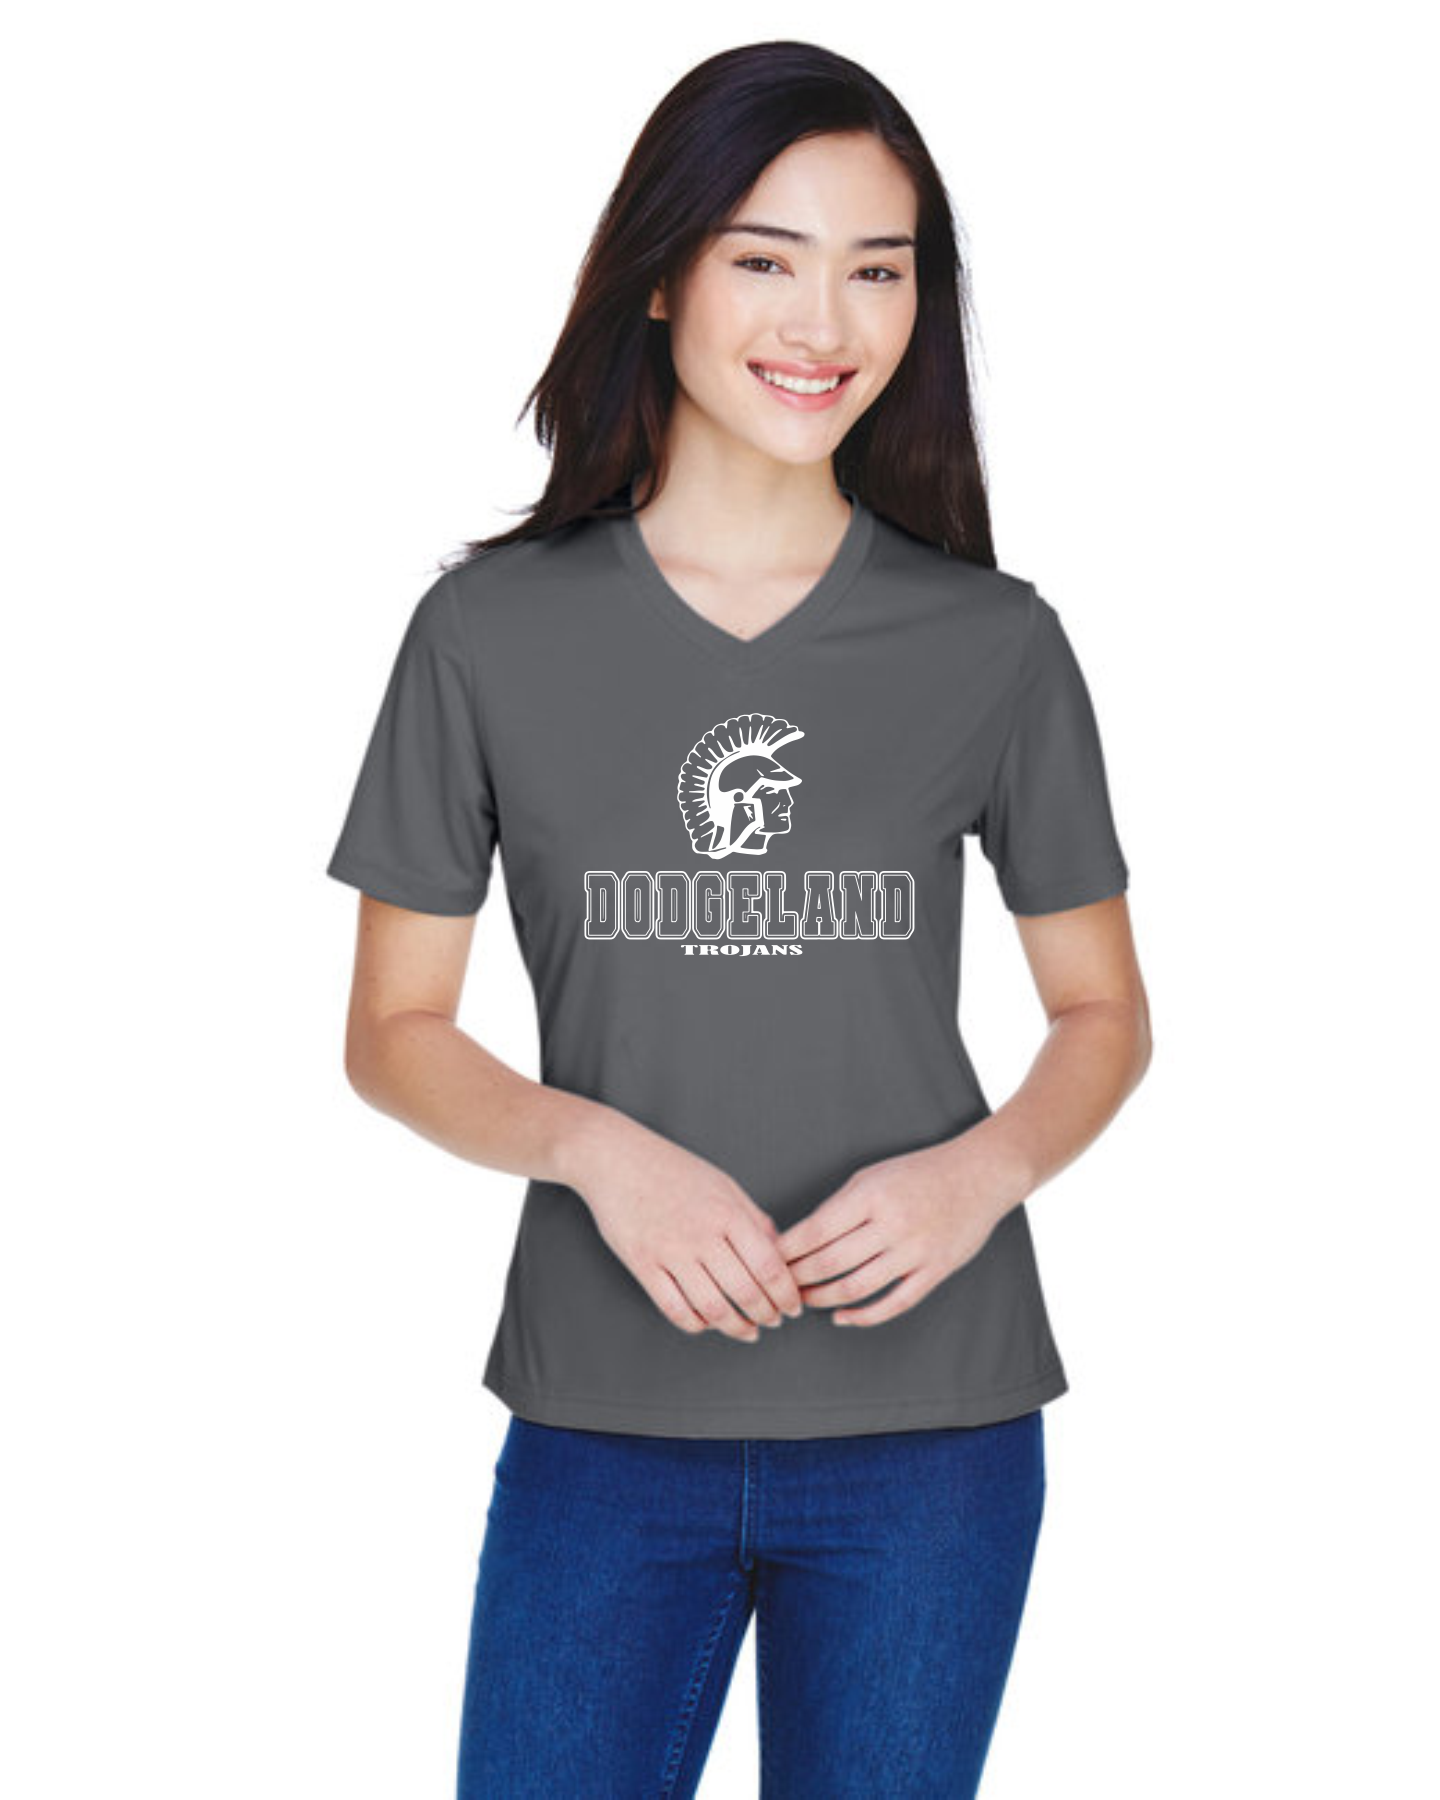 Dodgeland Ladies Team 365 Zone Performance T-Shirt